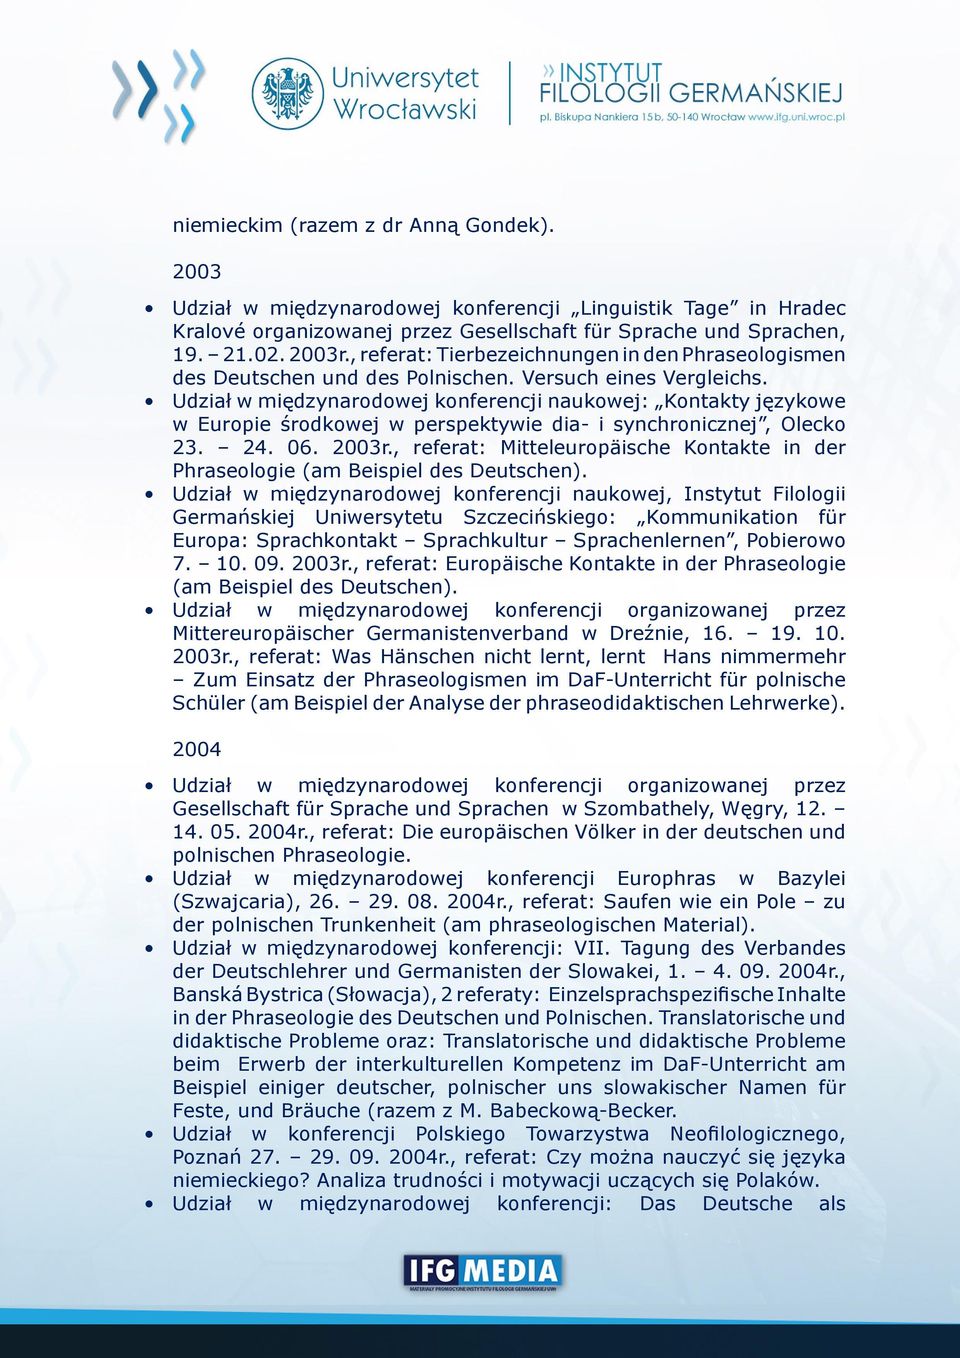 Udział w międzynarodowej konferencji naukowej: Kontakty językowe w Europie środkowej w perspektywie dia- i synchronicznej, Olecko 23. 24. 06. 2003r.